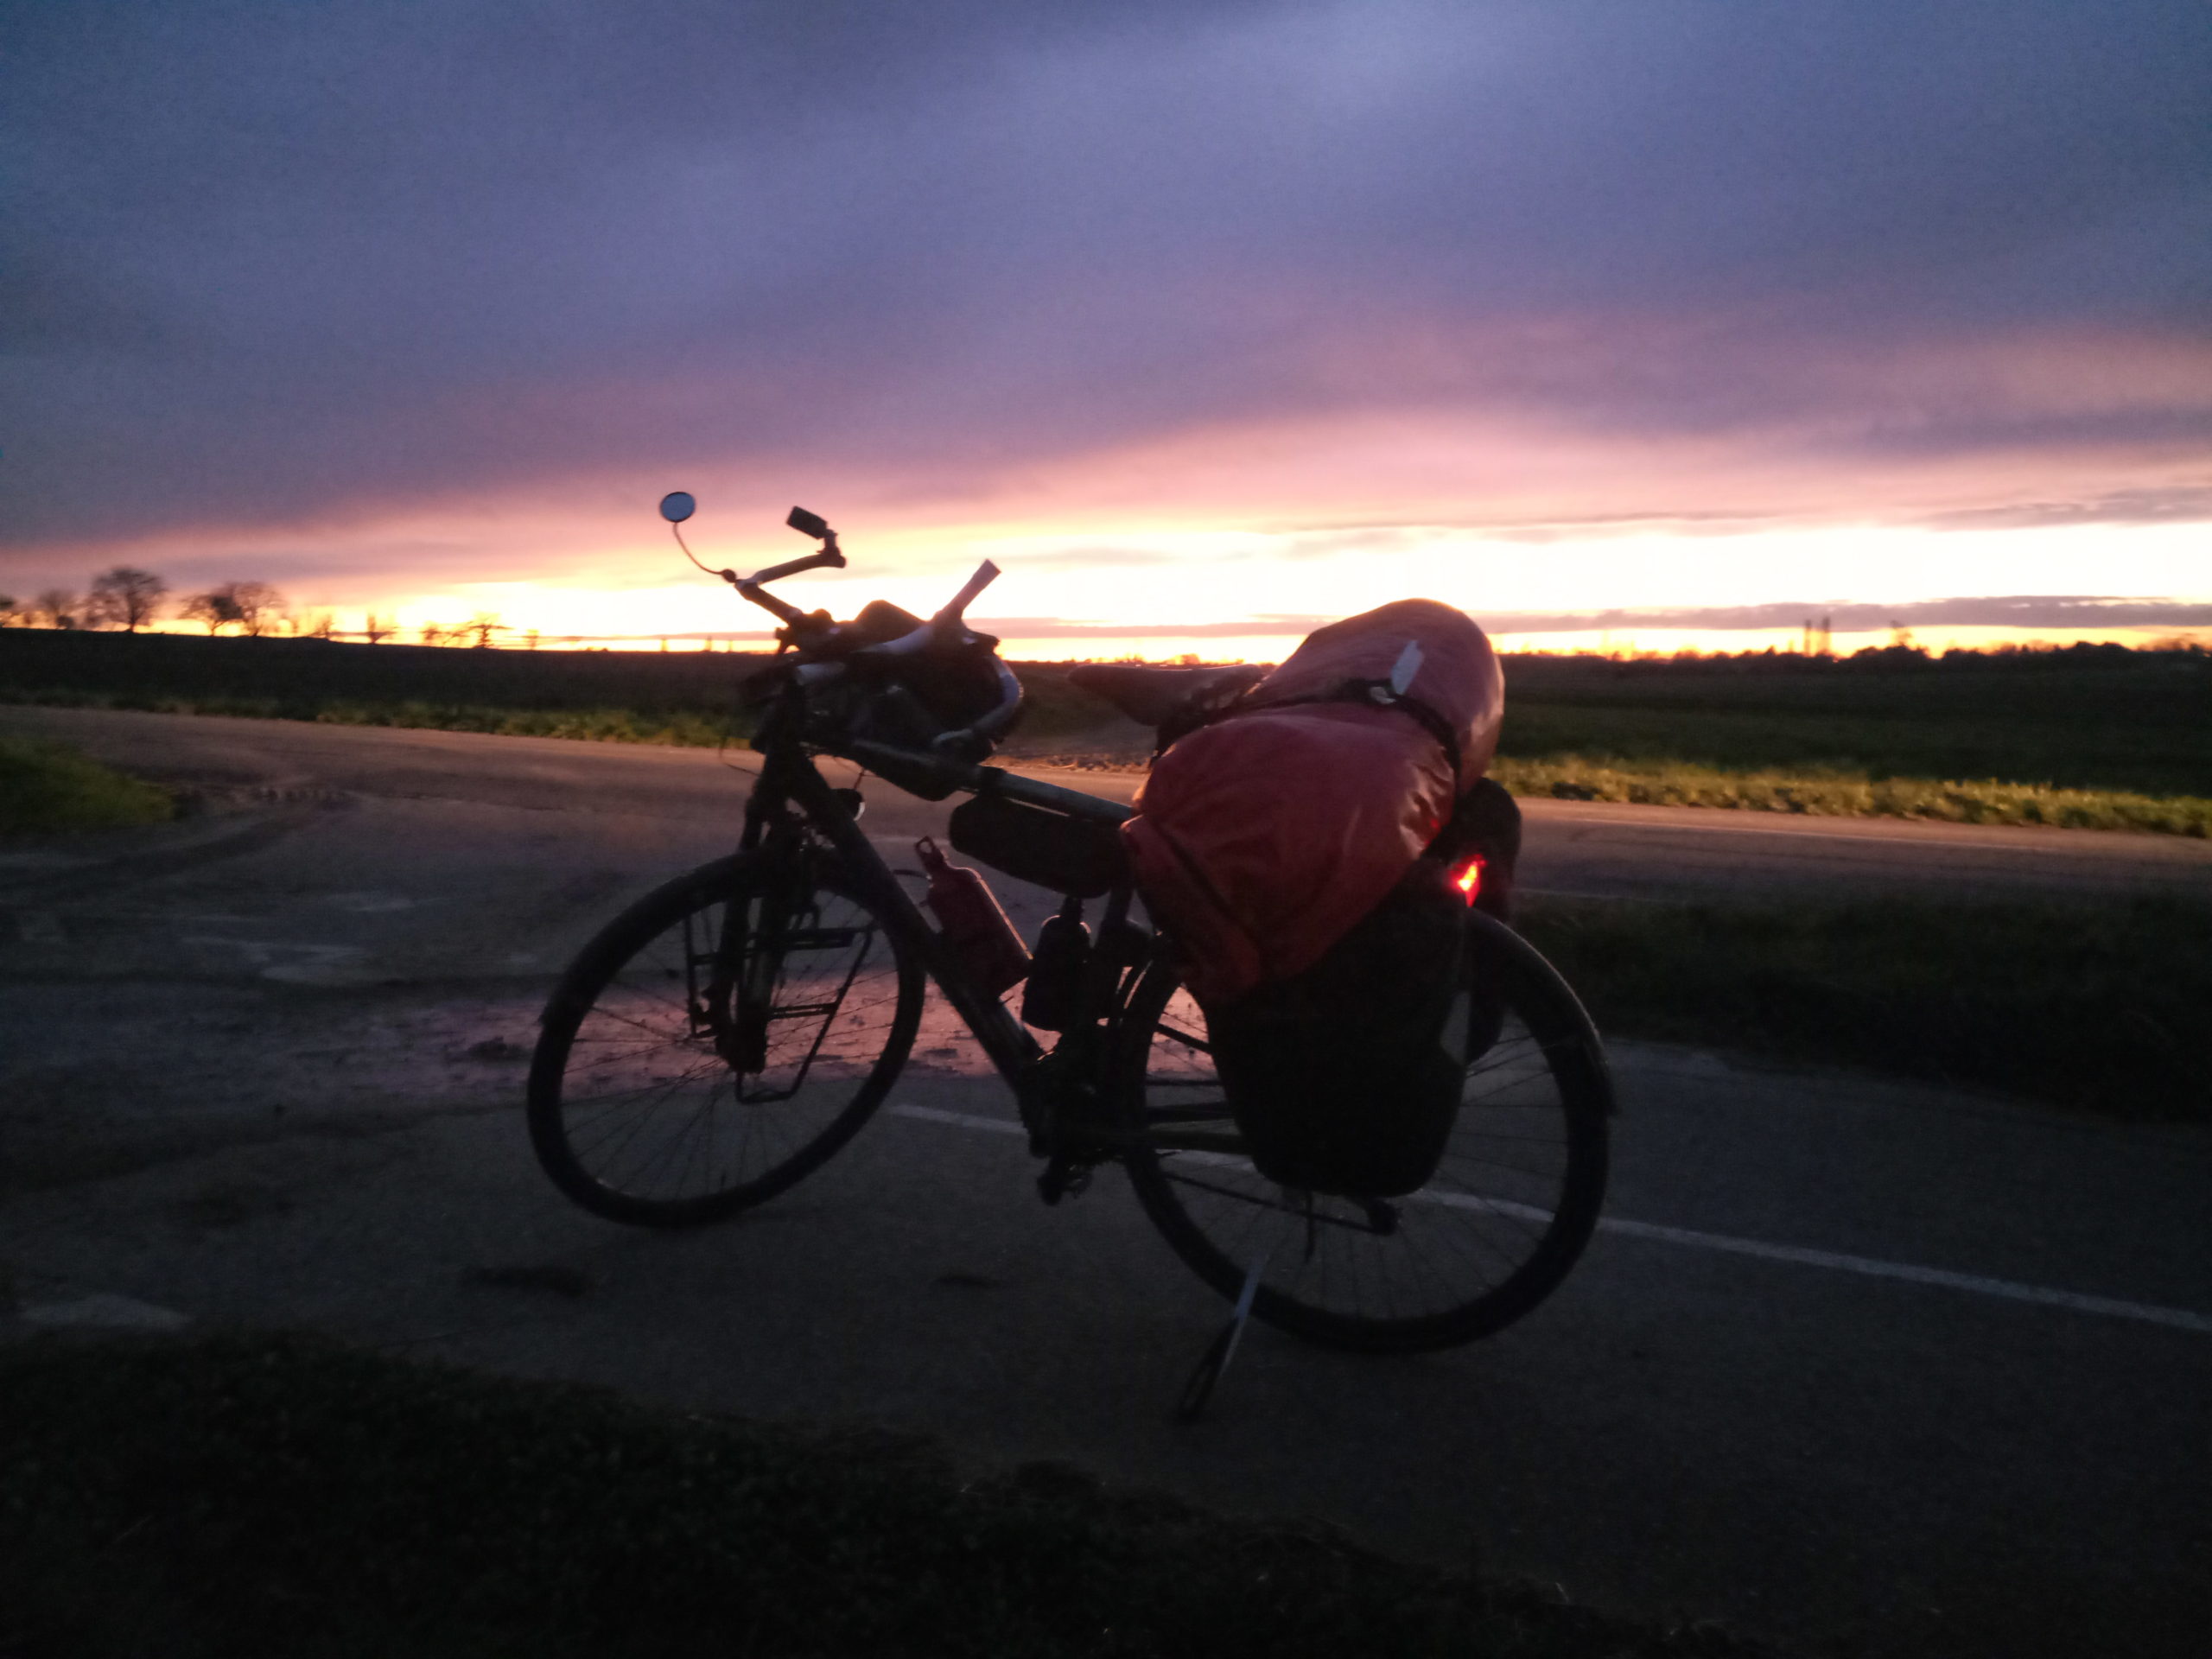 Reiserad fast im Dunkel vor einem rötlich orangenen Streifen Abendrot.